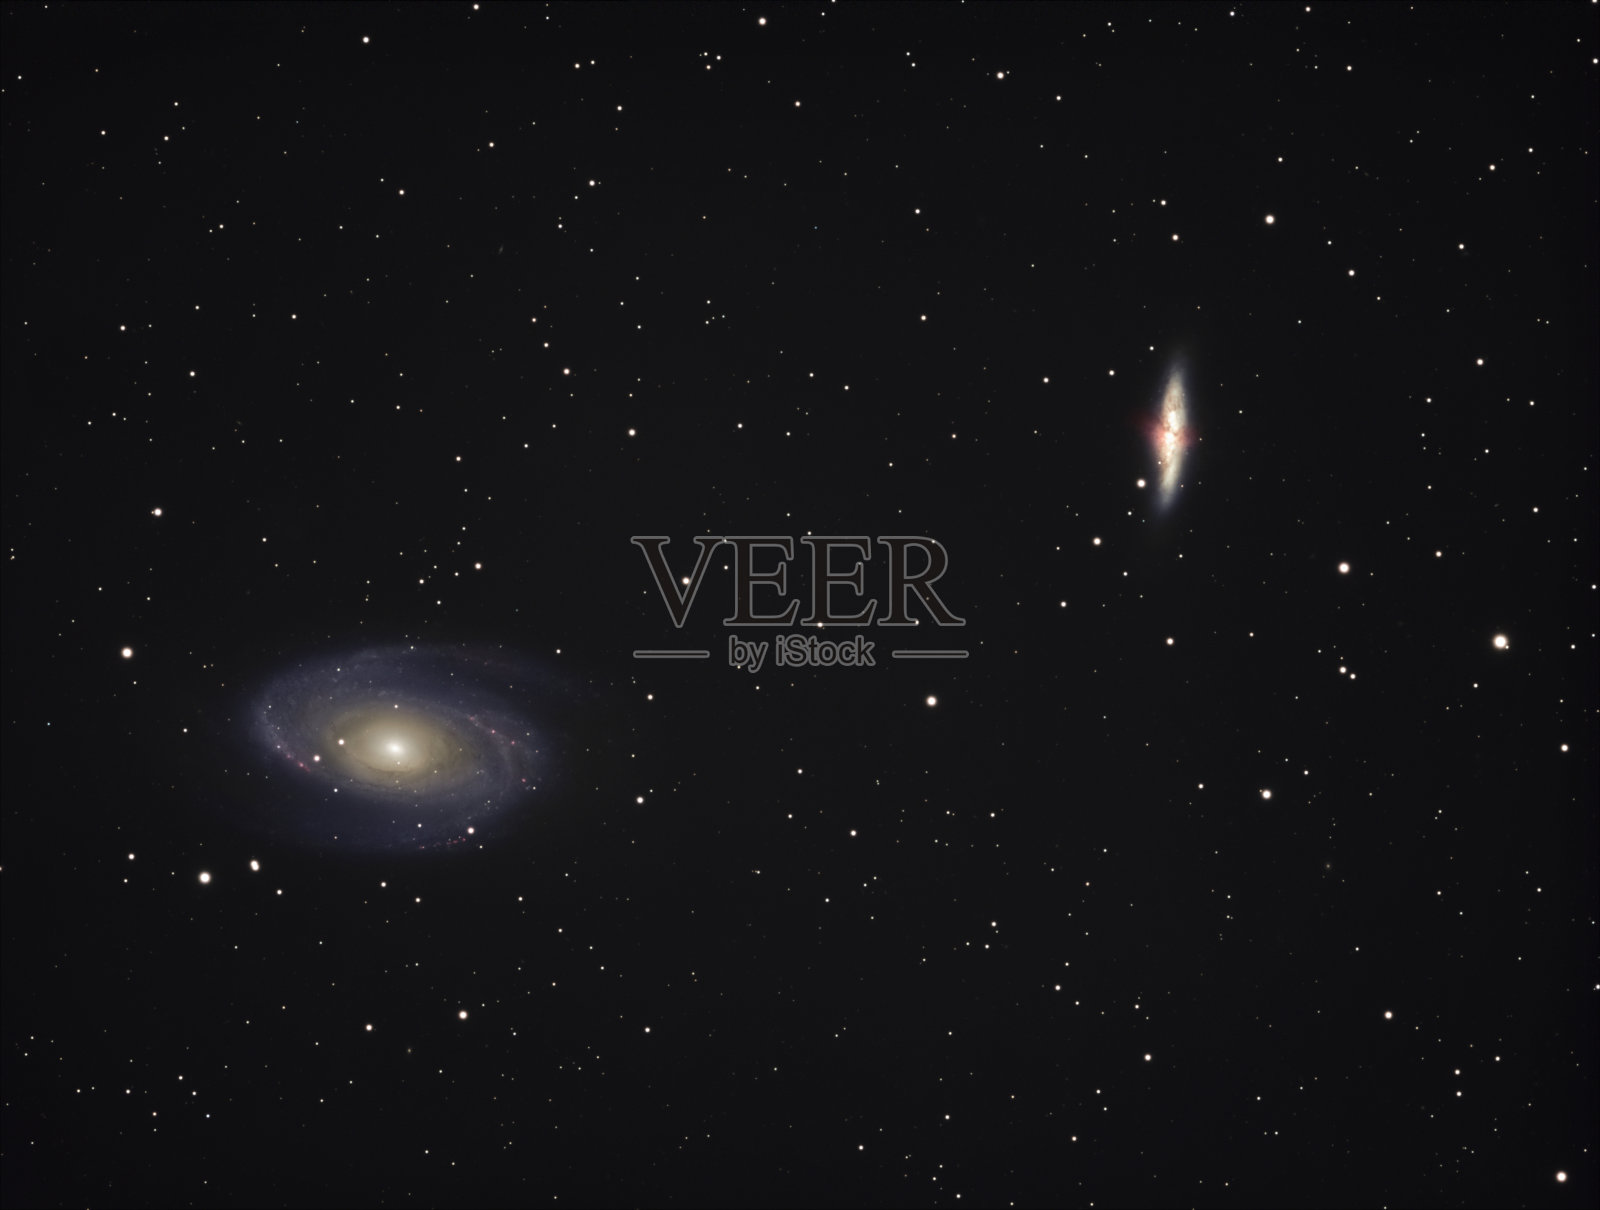 星系M81和M82在大熊星座库存照片照片摄影图片